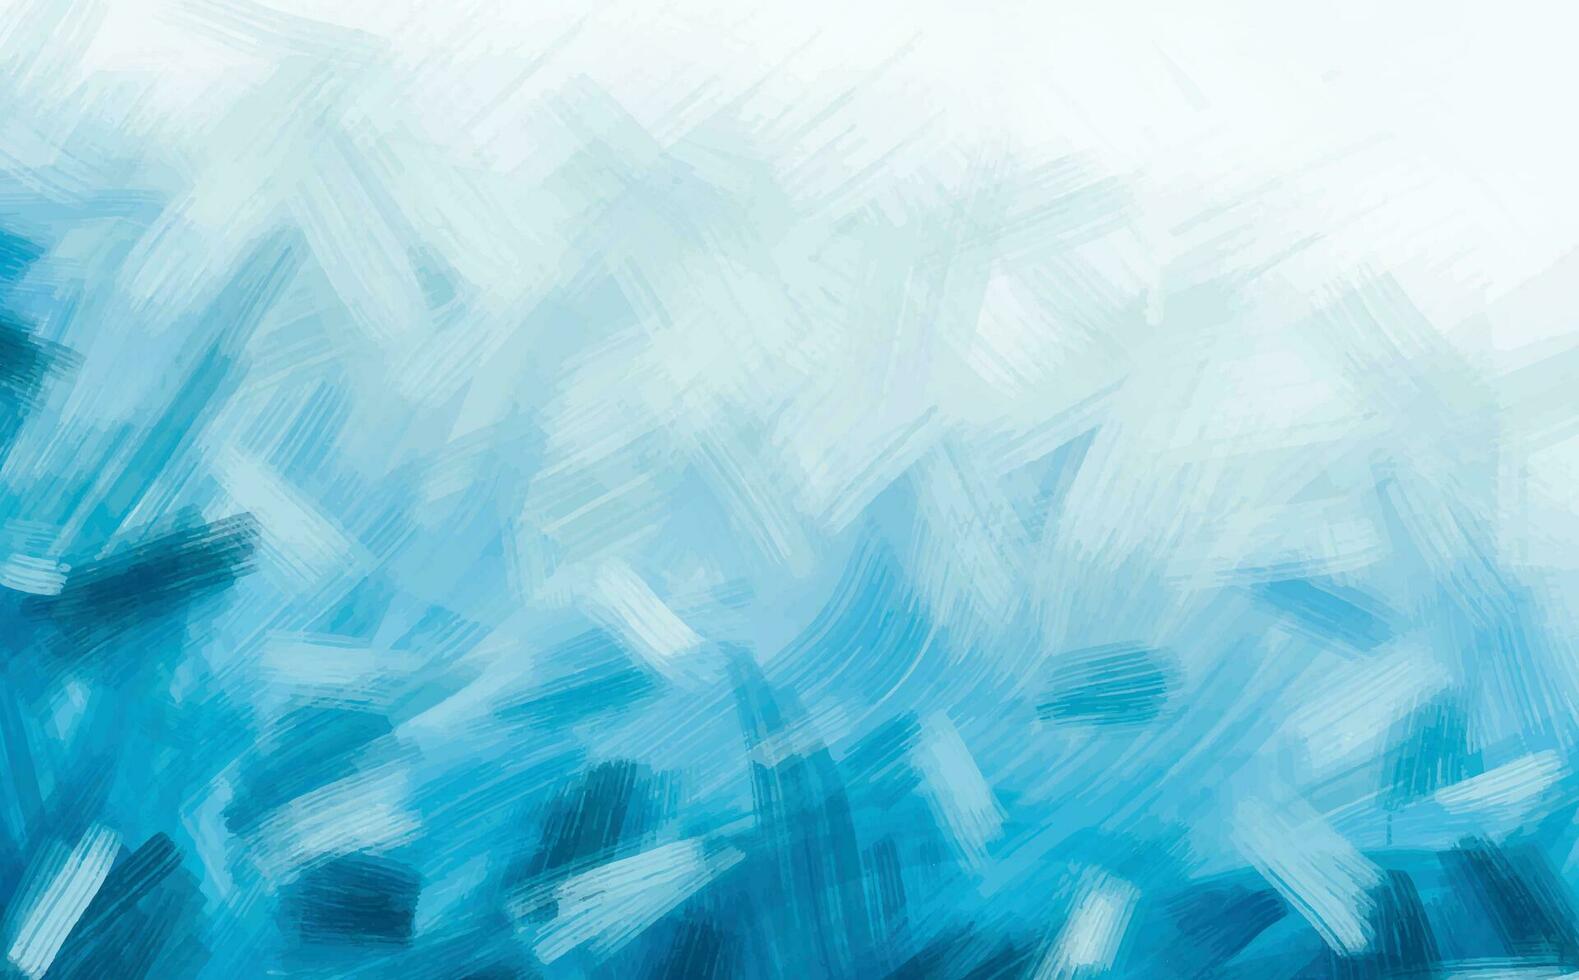 abstrakt Blau Winter Aquarell Hintergrund. Himmel Muster mit Schnee. Licht Blau Aquarell Papier Textur Hintergrund. Vektor Wasser Farbe Design Illustration